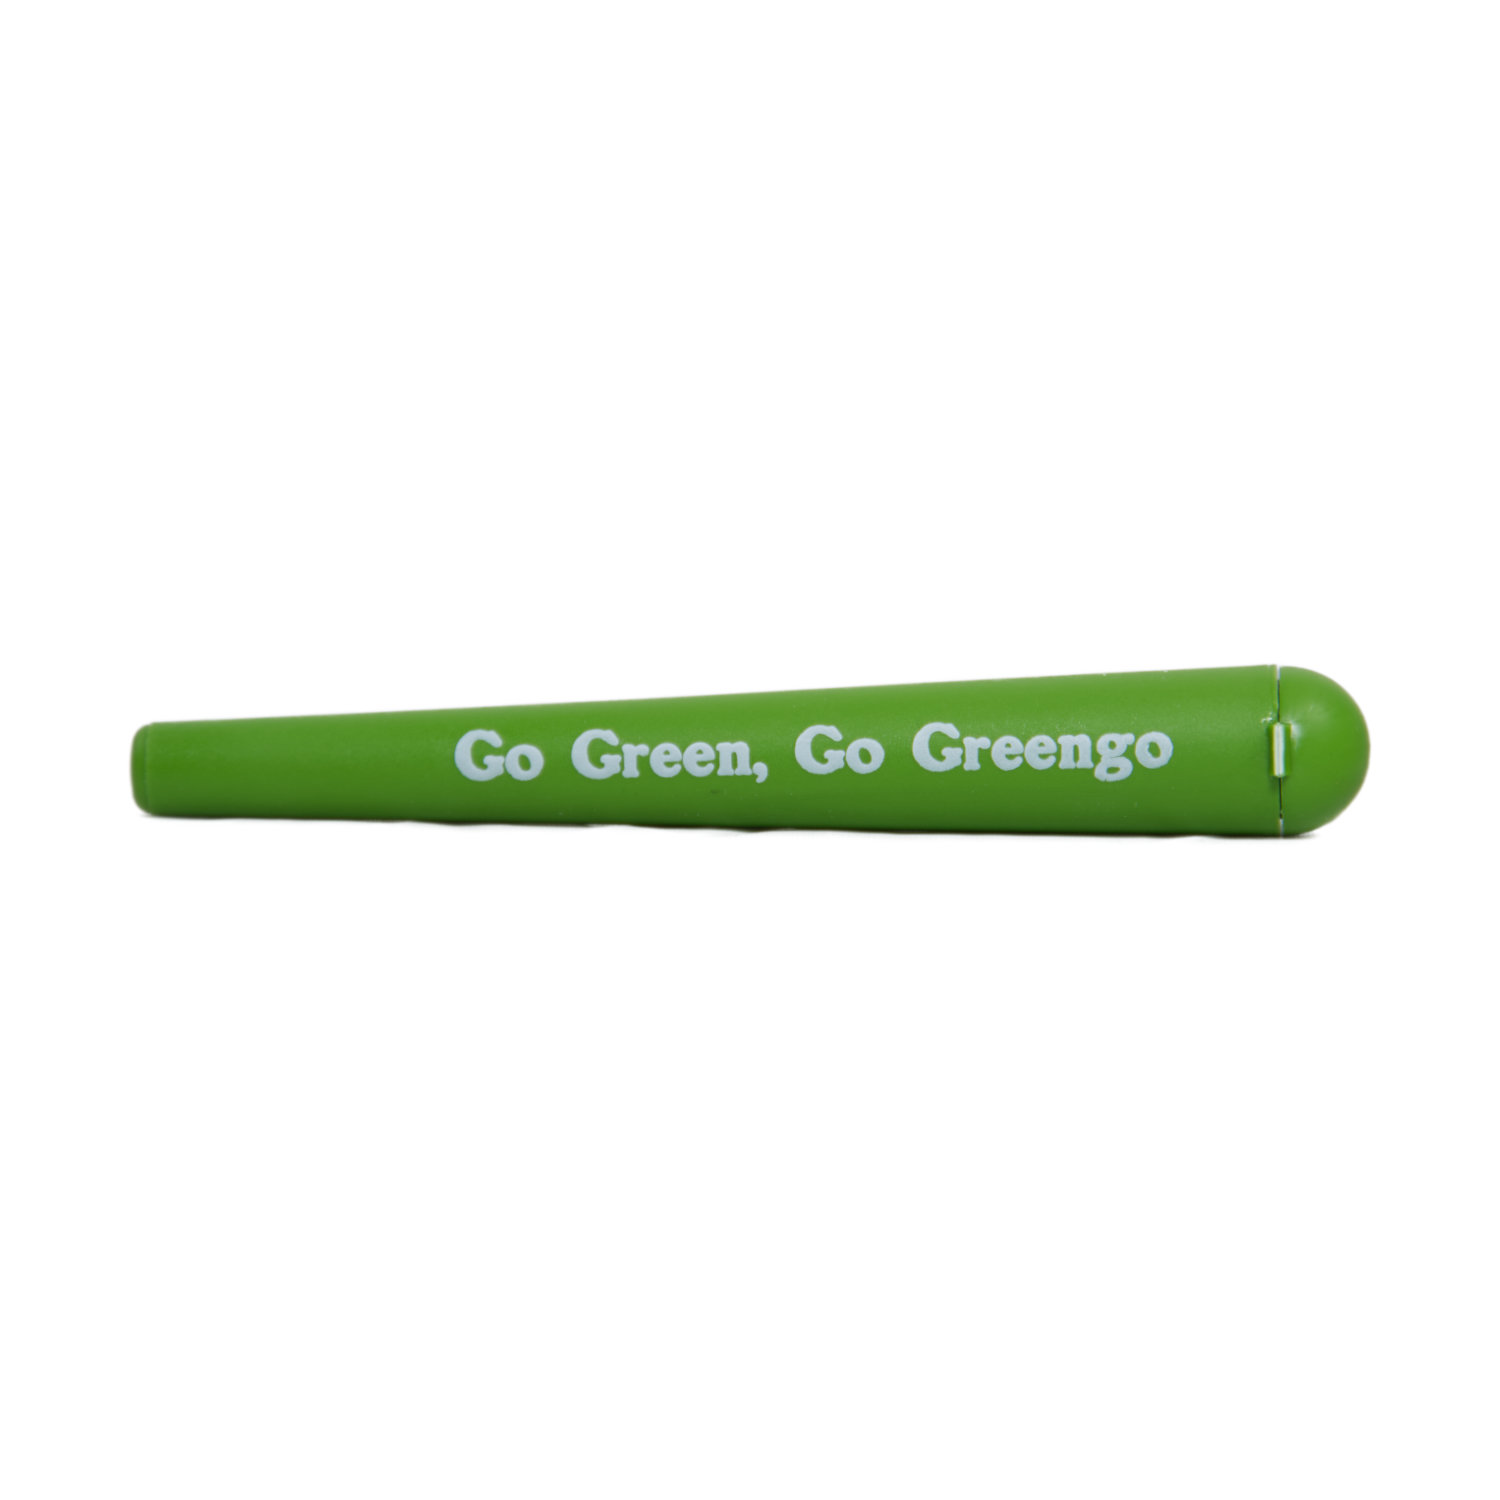 Savarette “Greengo”